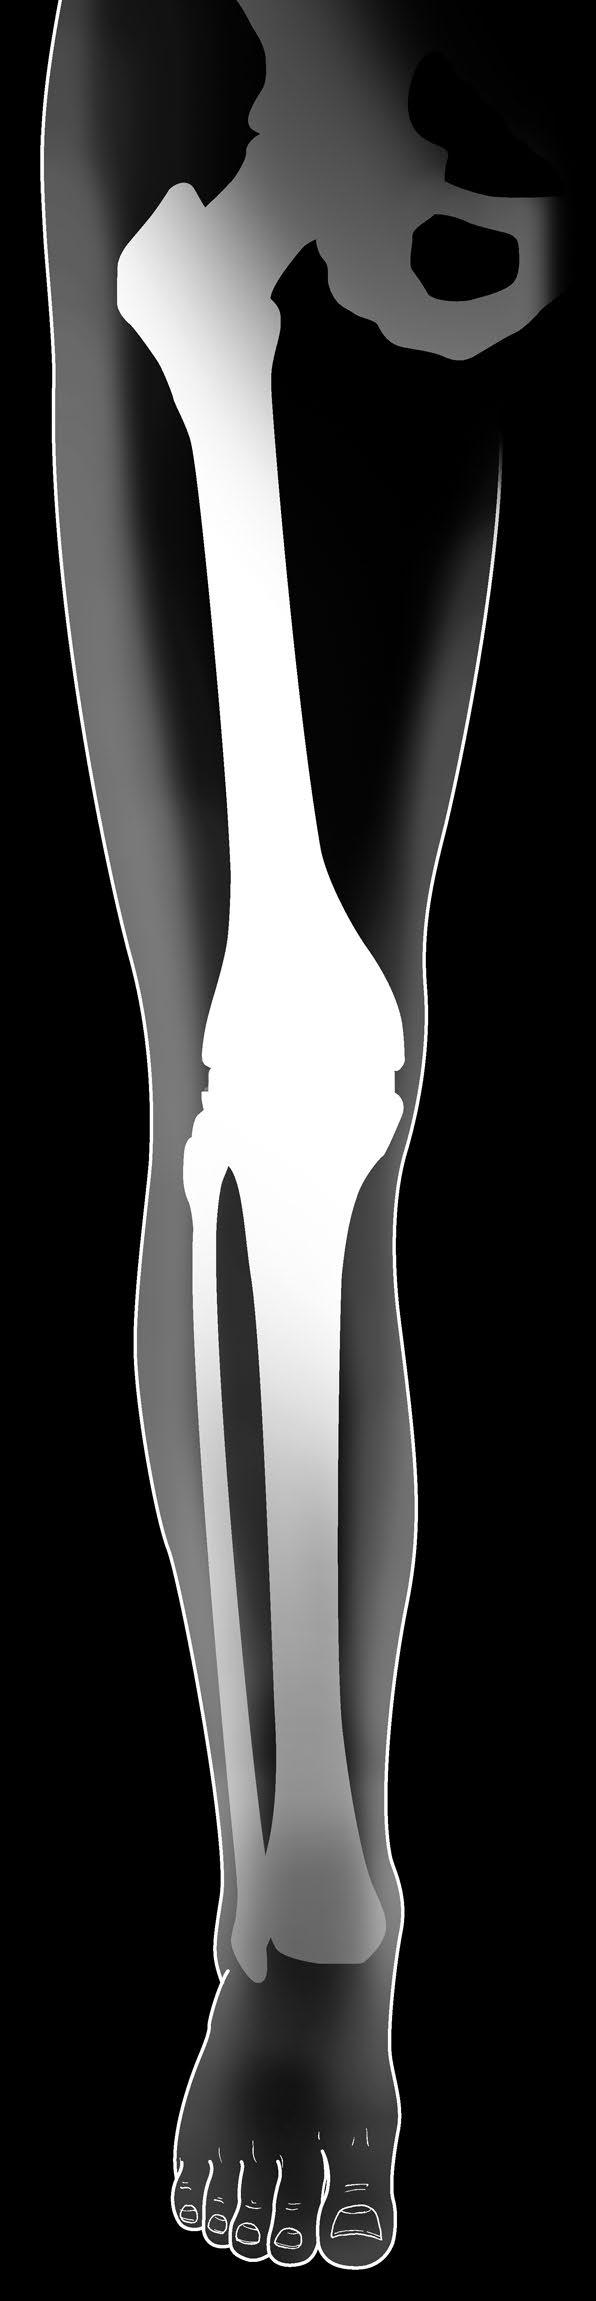 Los extremos del hueso lesionado se revisten con componentes diseñados para volver a crear el contorno natural de los huesos de una rodilla sana.